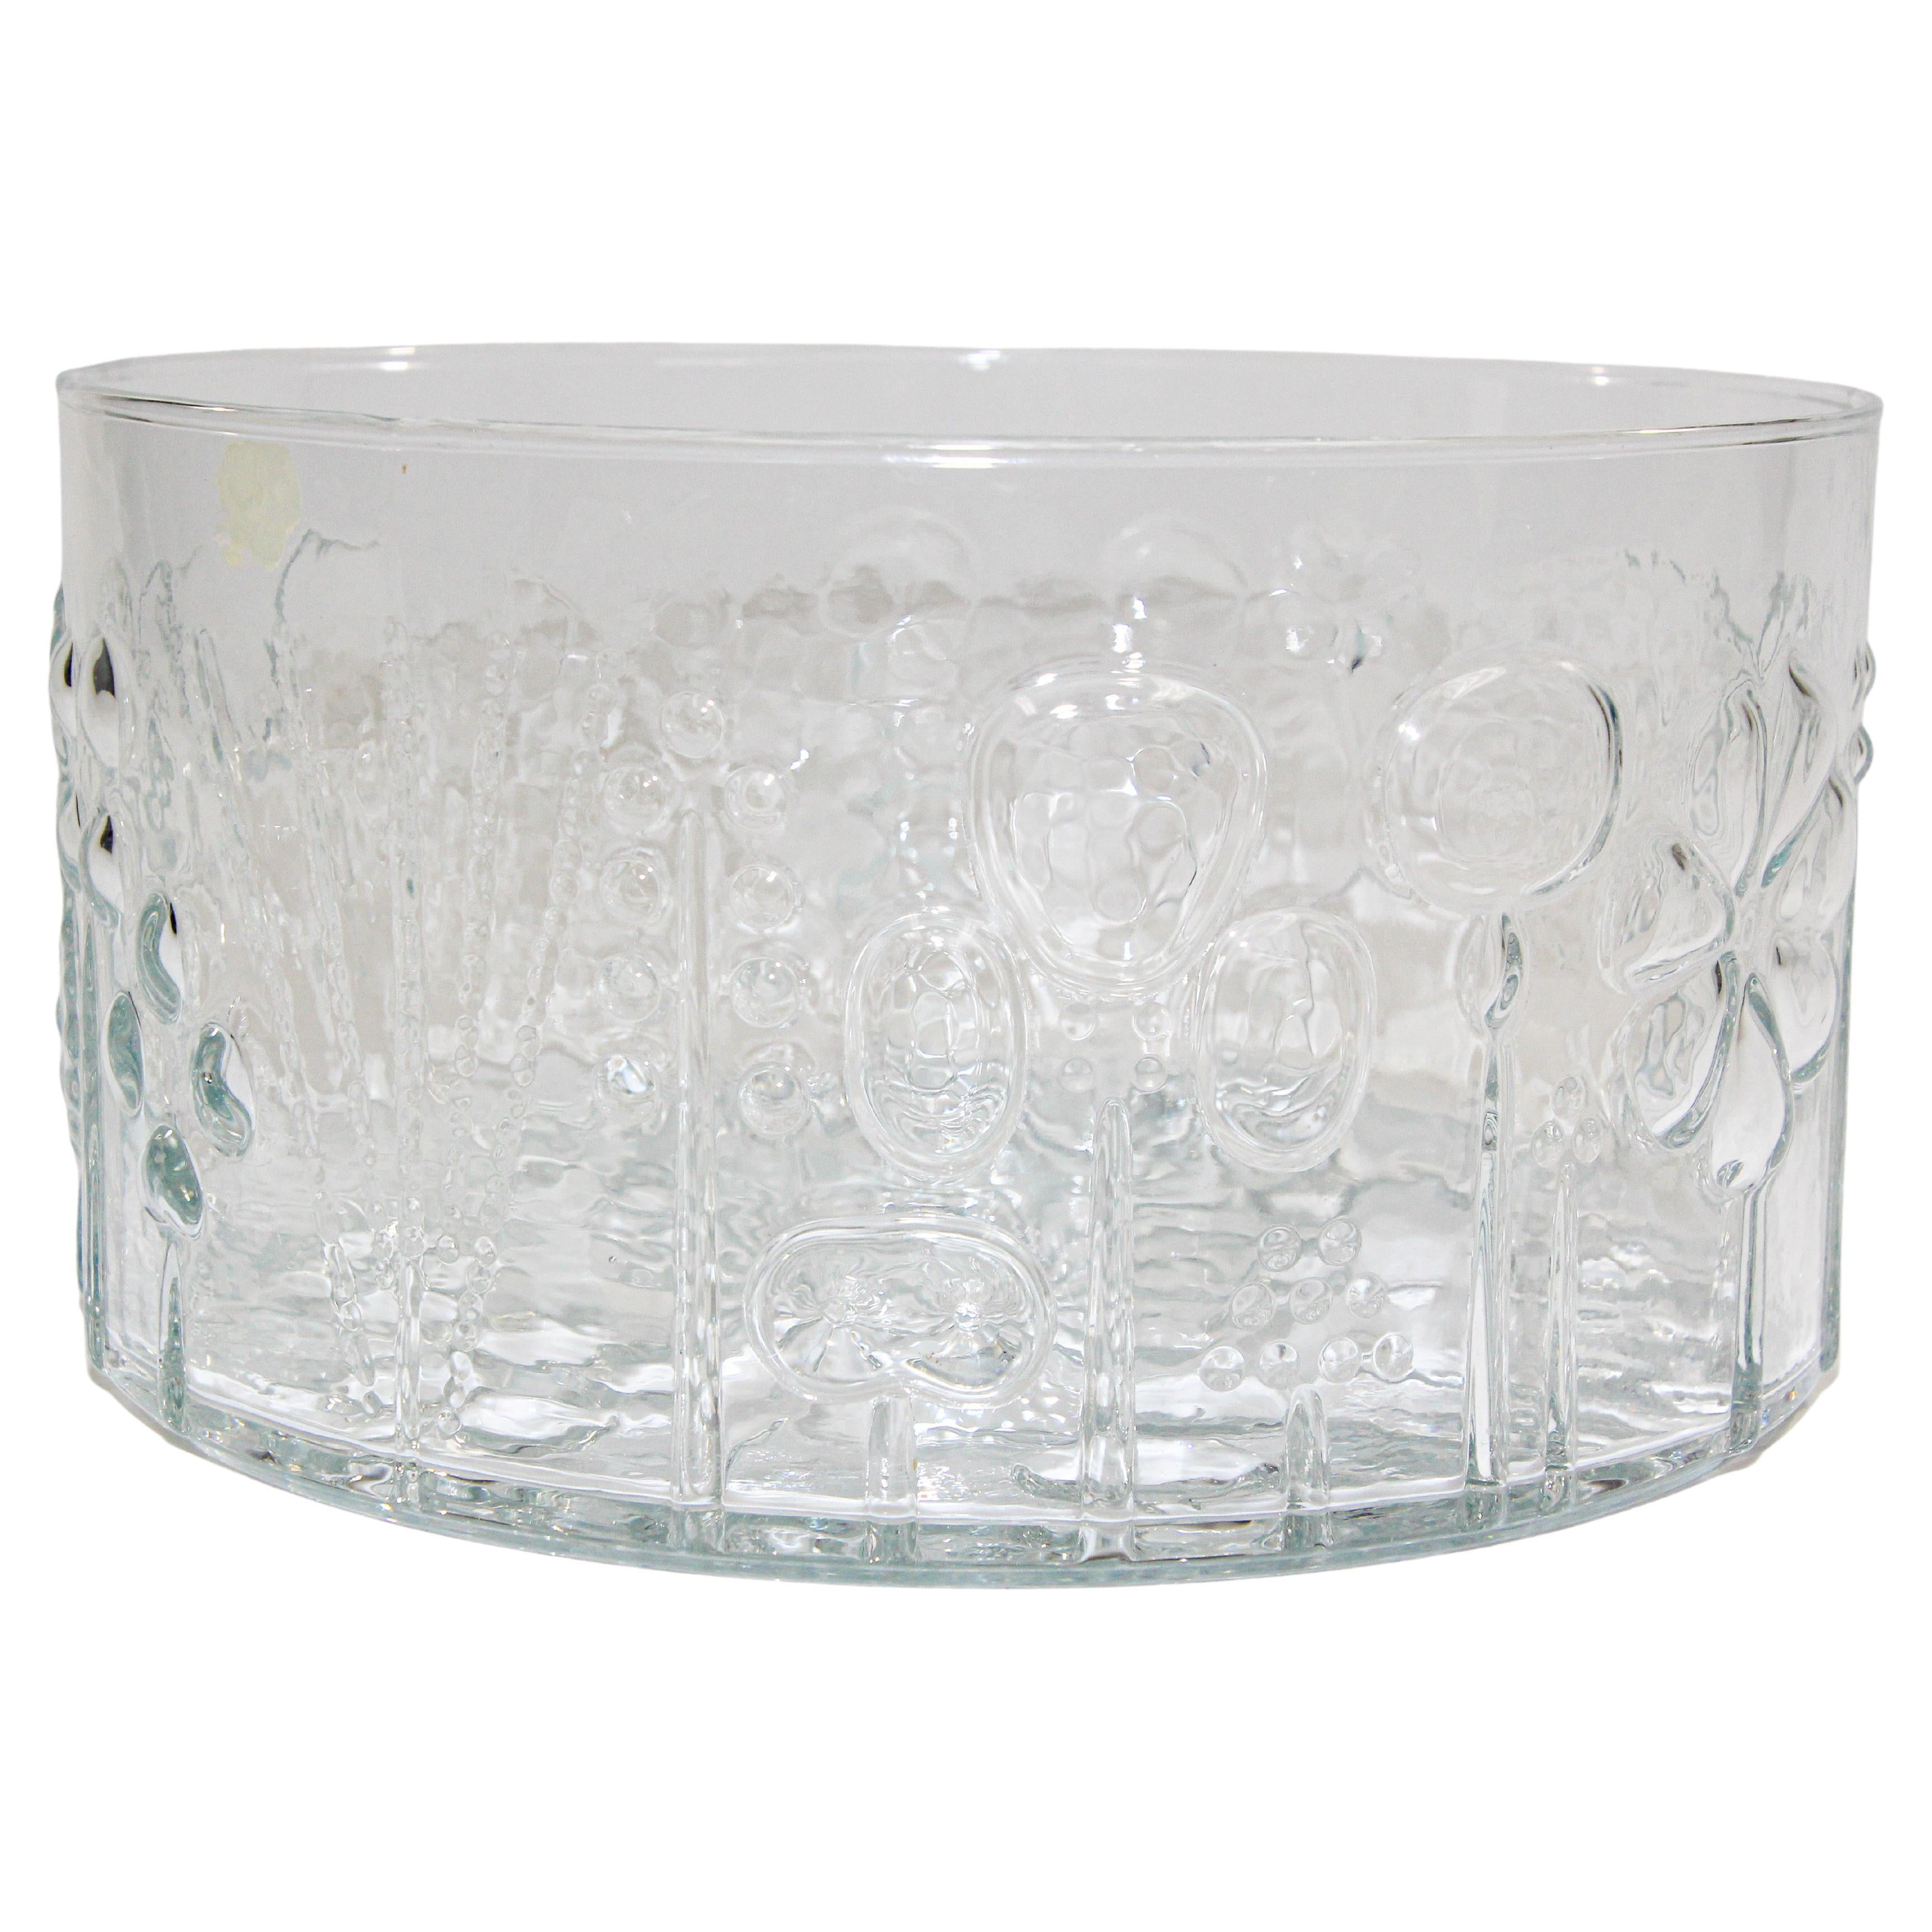 Vintage Glass Bowl "Flora" by Oiva Toikka design for Nuutajarvi Notsjo 1960's